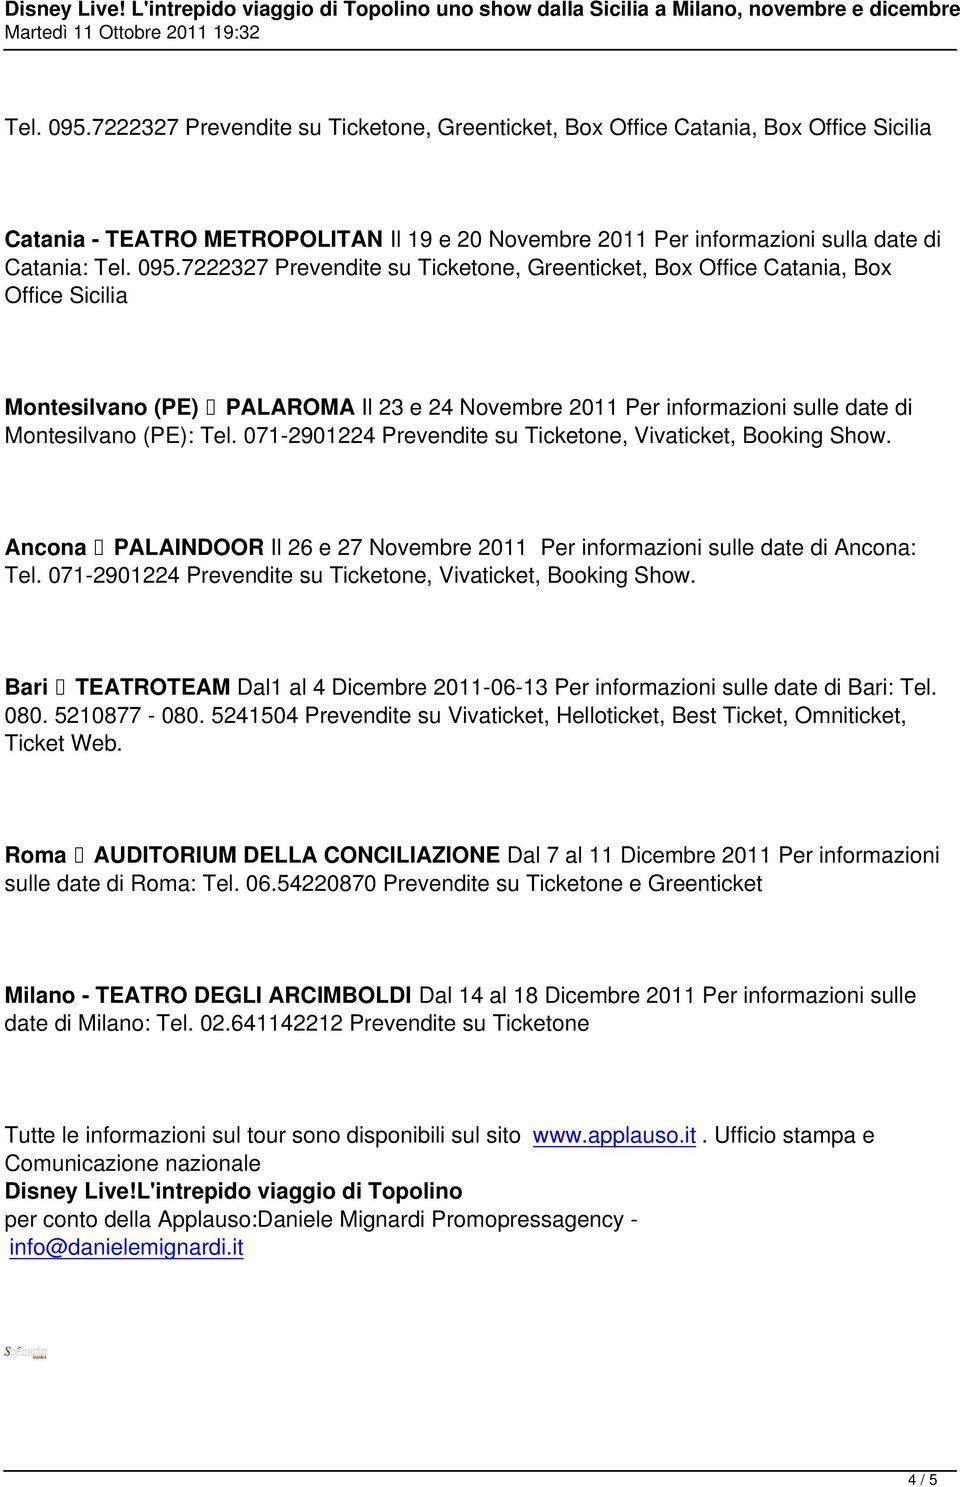 071-2901224 Prevendite su Ticketone, Vivaticket, Booking Show. Bari TEATROTEAM Dal1 al 4 Dicembre 2011-06-13 Per informazioni sulle date di Bari: Tel. 080. 5210877-080.